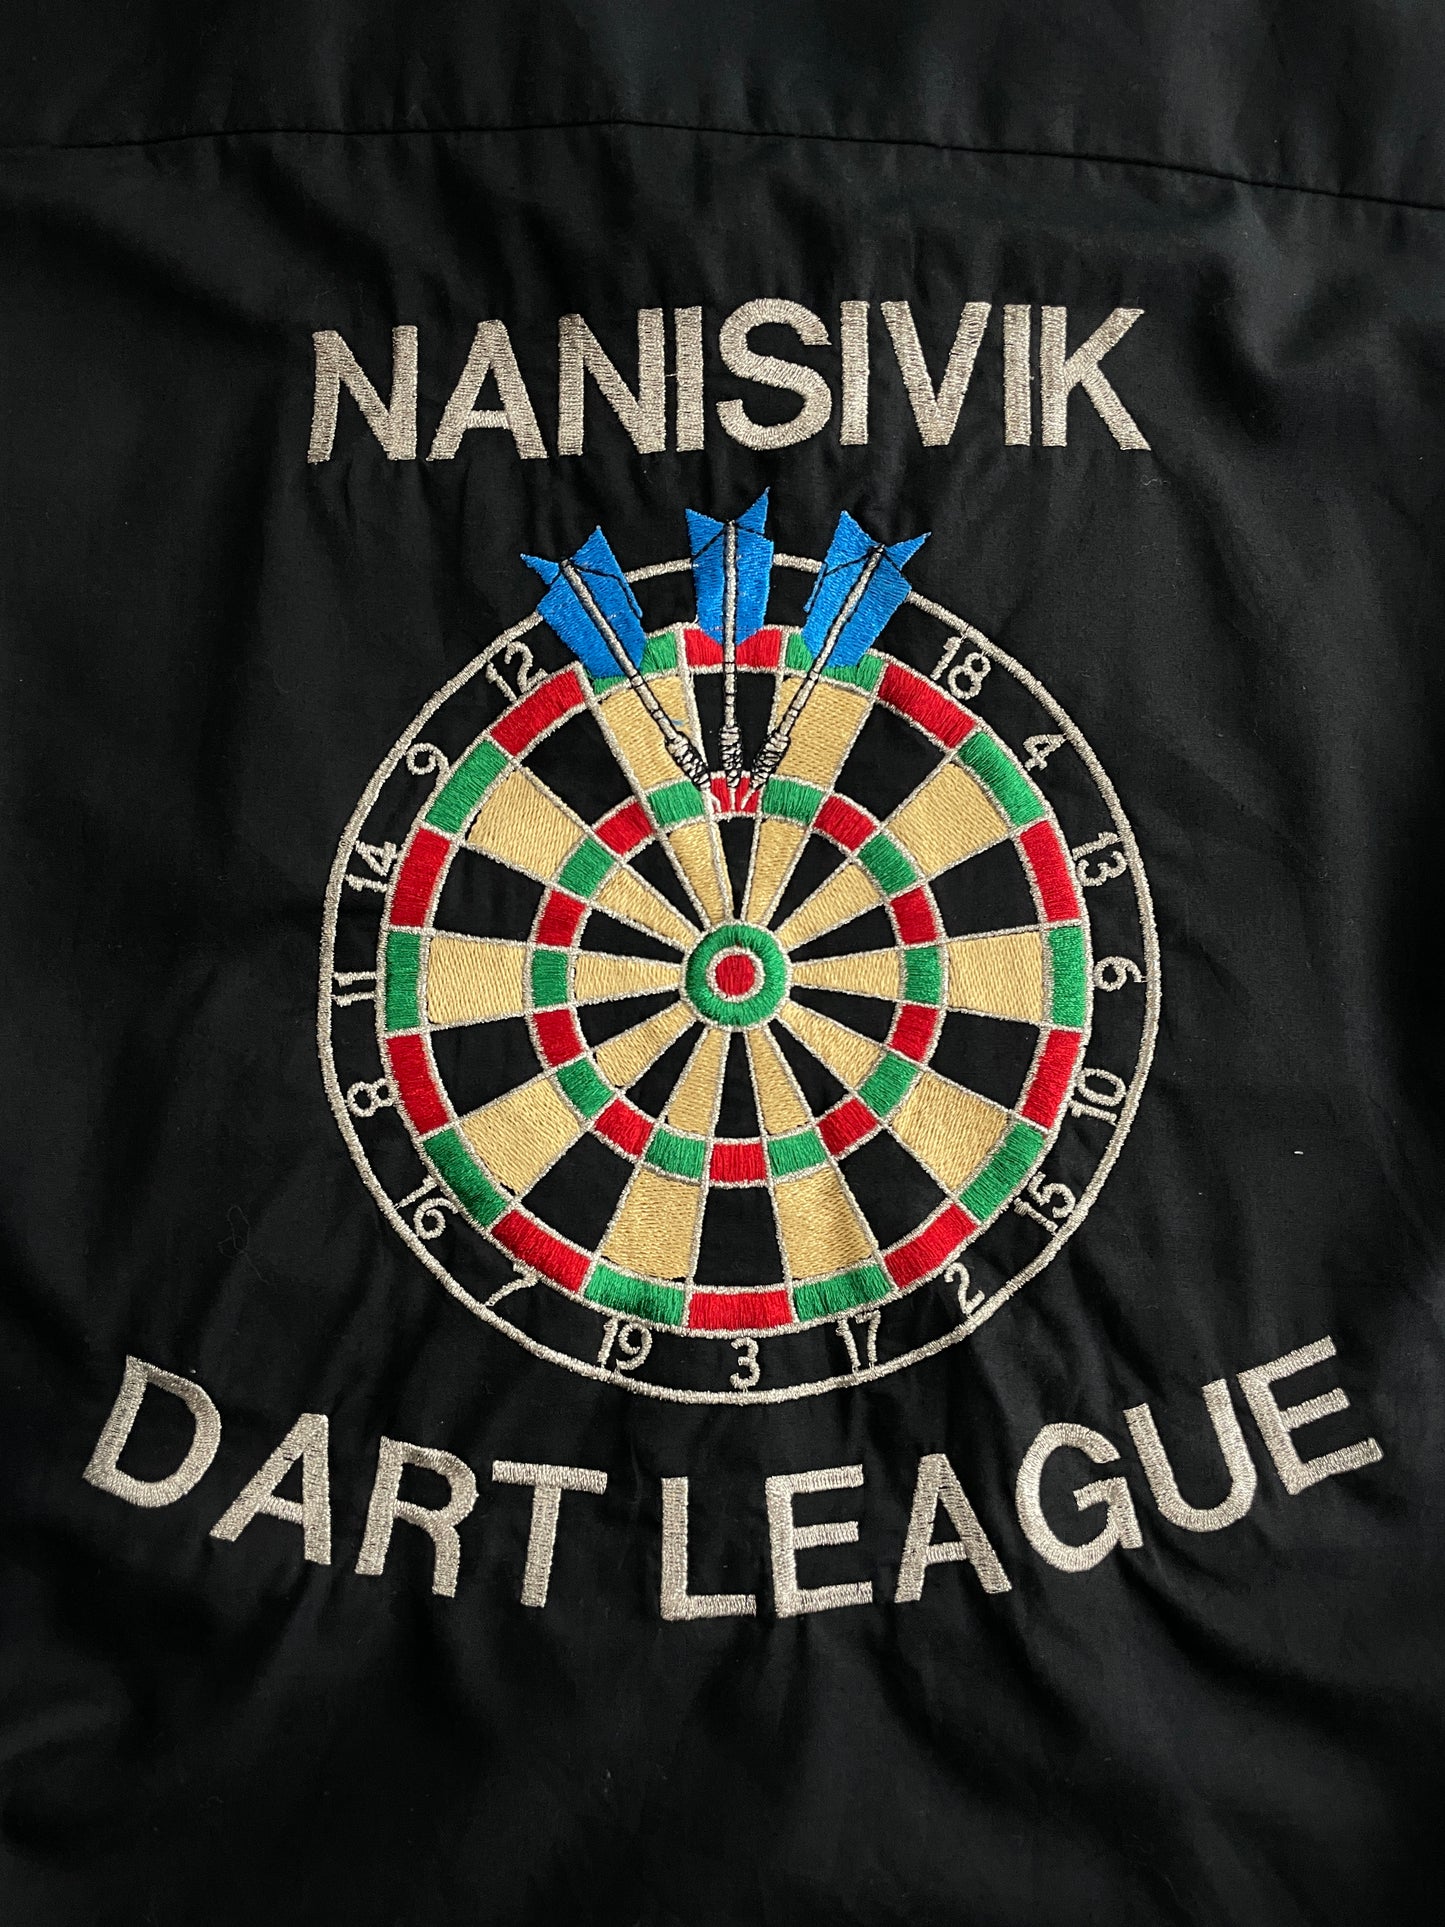 Nansavik Dart League Shirt [XL]